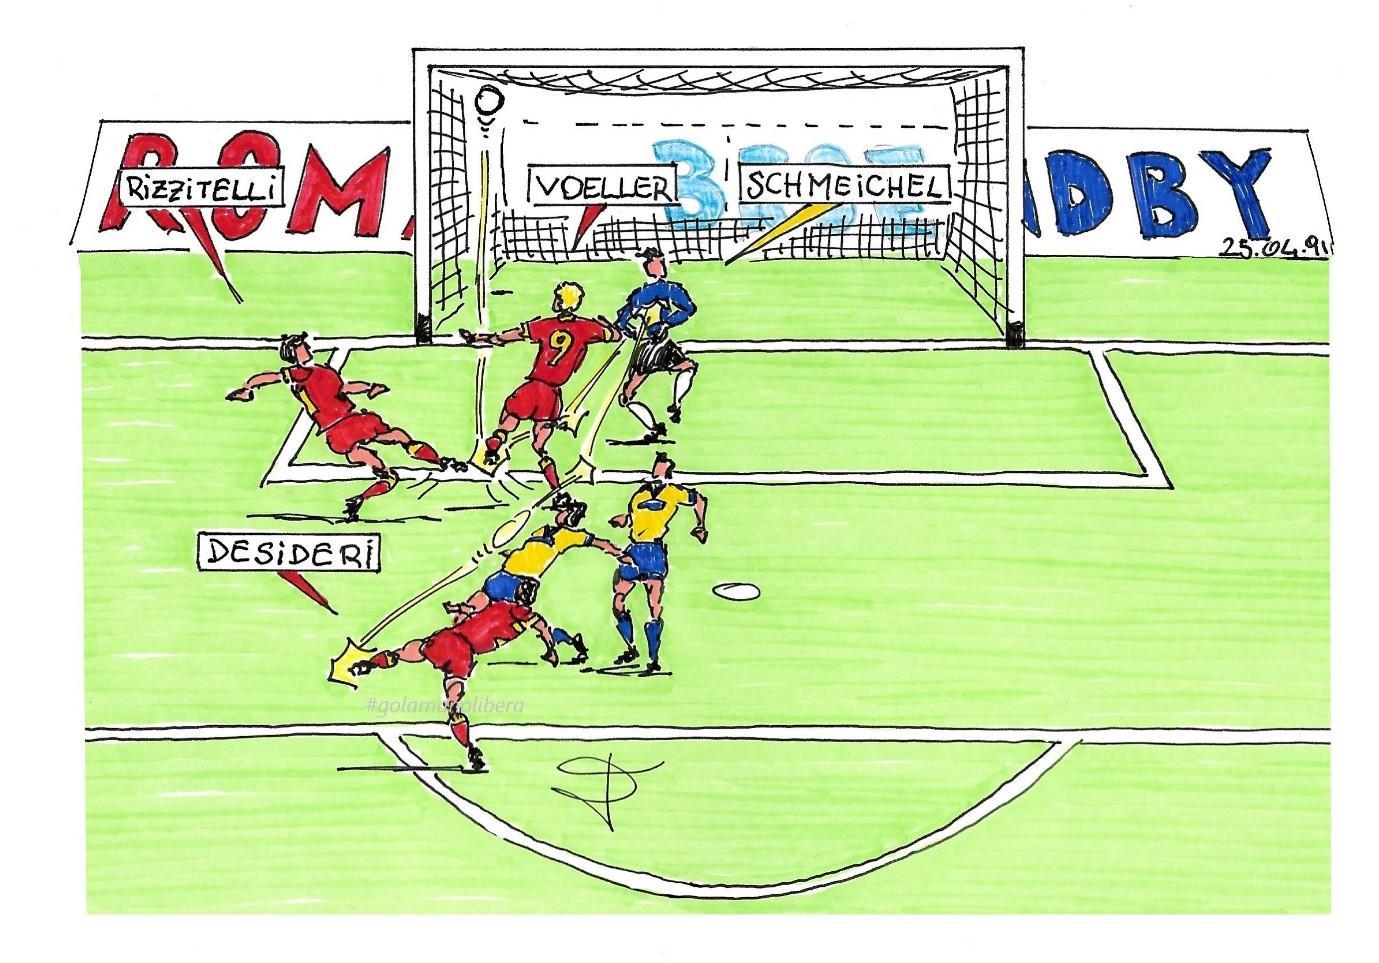 Il gol di Voeller al Broendby disegnato da Luciano Scorza